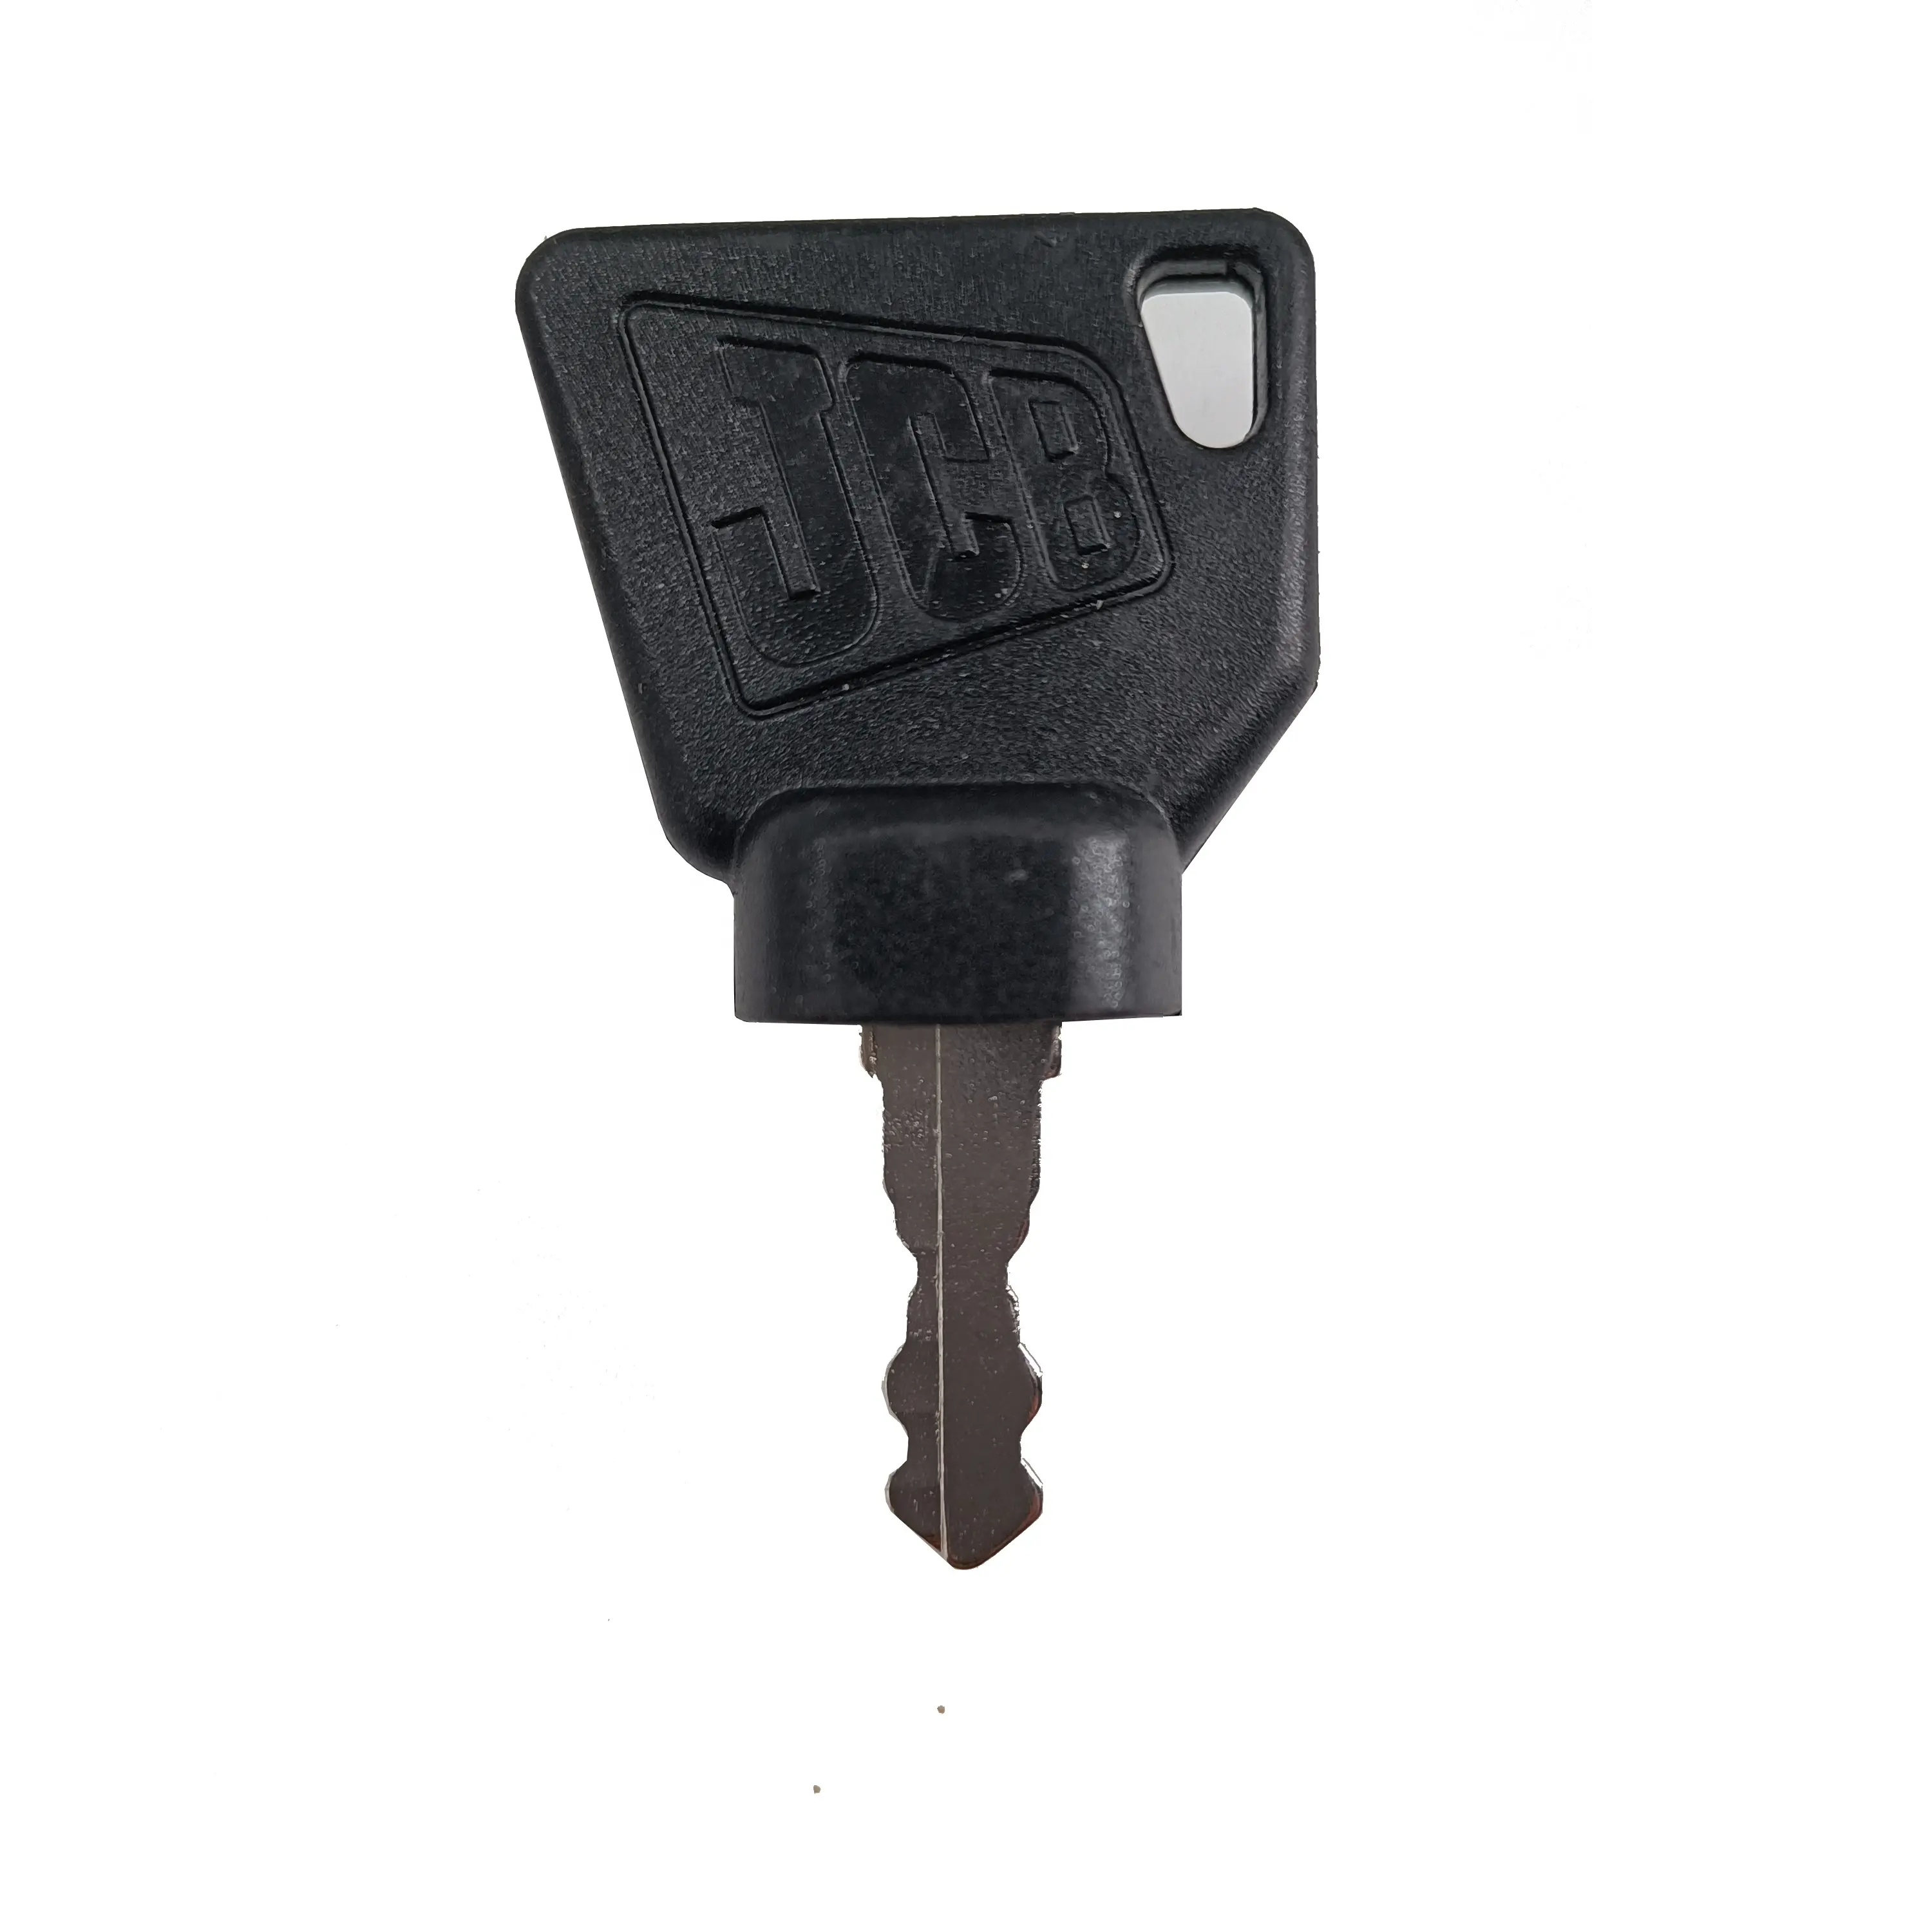 Ключ экскаватора для JCB 200 220 240 360 переключатель зажигания ключ выключатель экскаватора ключ 701/45501 333/Y1374 331/26790 14607